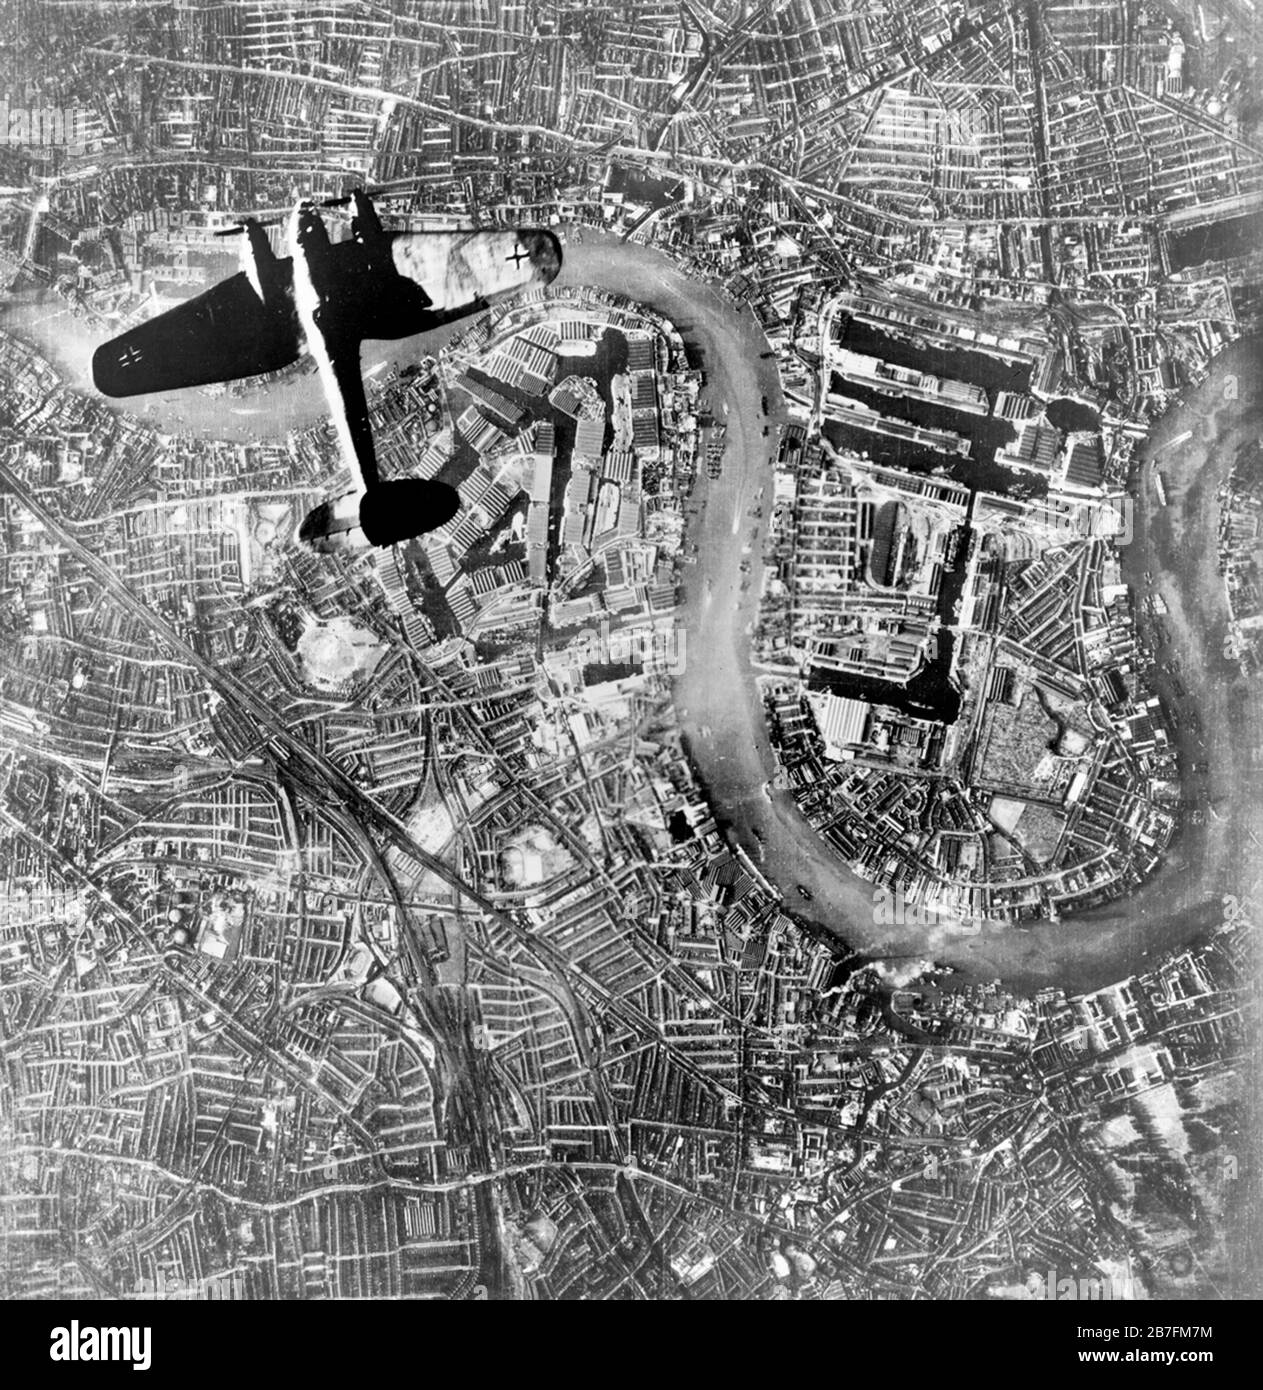 Heinkel Over Wapping - EIN deutscher Jagdbomber der Luftwaffe Heinkel He 111, der zu Beginn der nächtelangen Überfälle der Luftwaffe vom 7. September 1940 über das Wapping und die Insel der Hunde im East End von London flog. Stockfoto